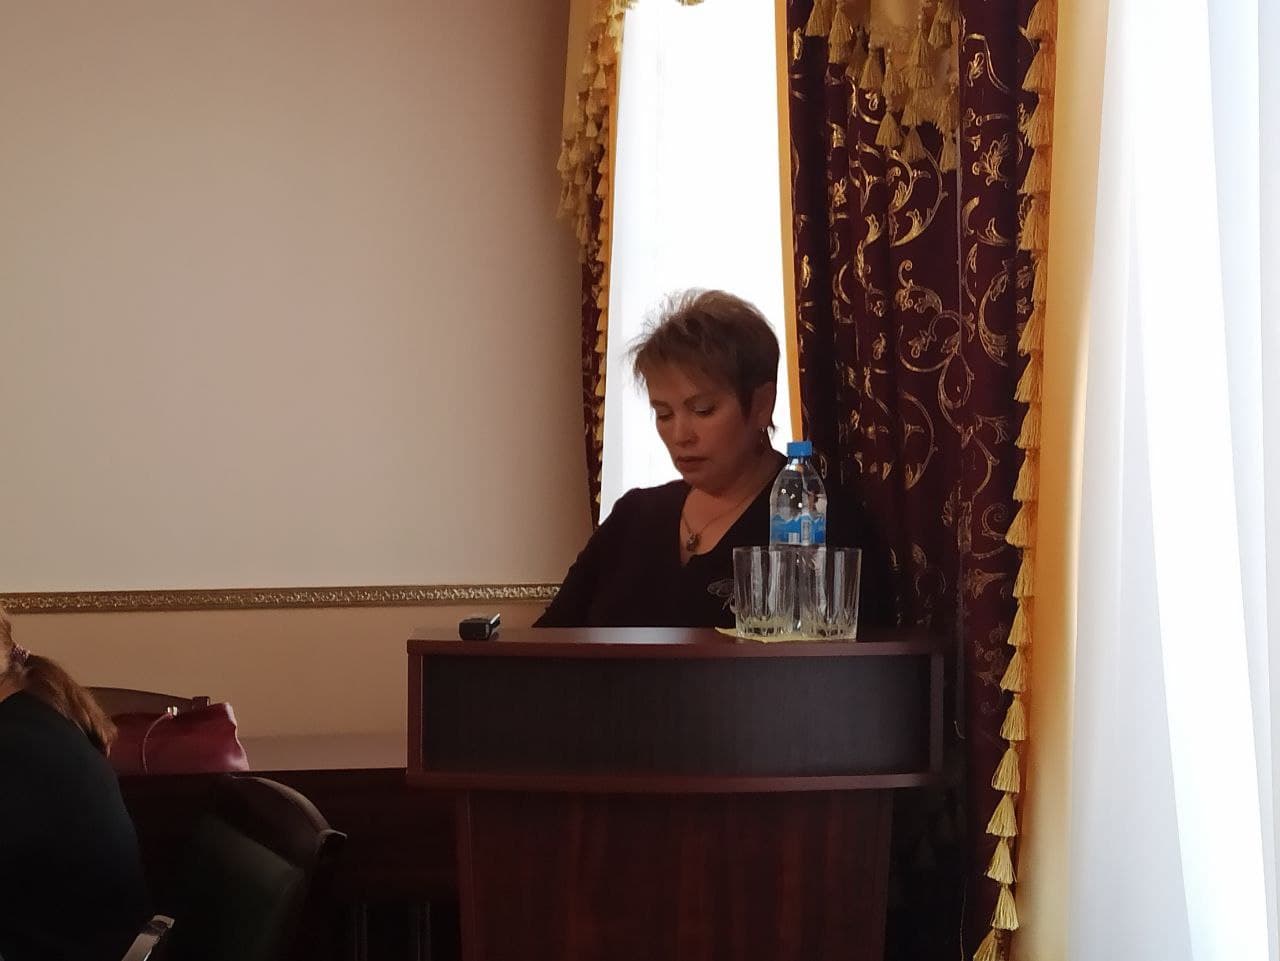 Директор МУП “Управление ЖКХ” Татьяна Орехова отчиталась перед Думой. О чем спросили депутаты